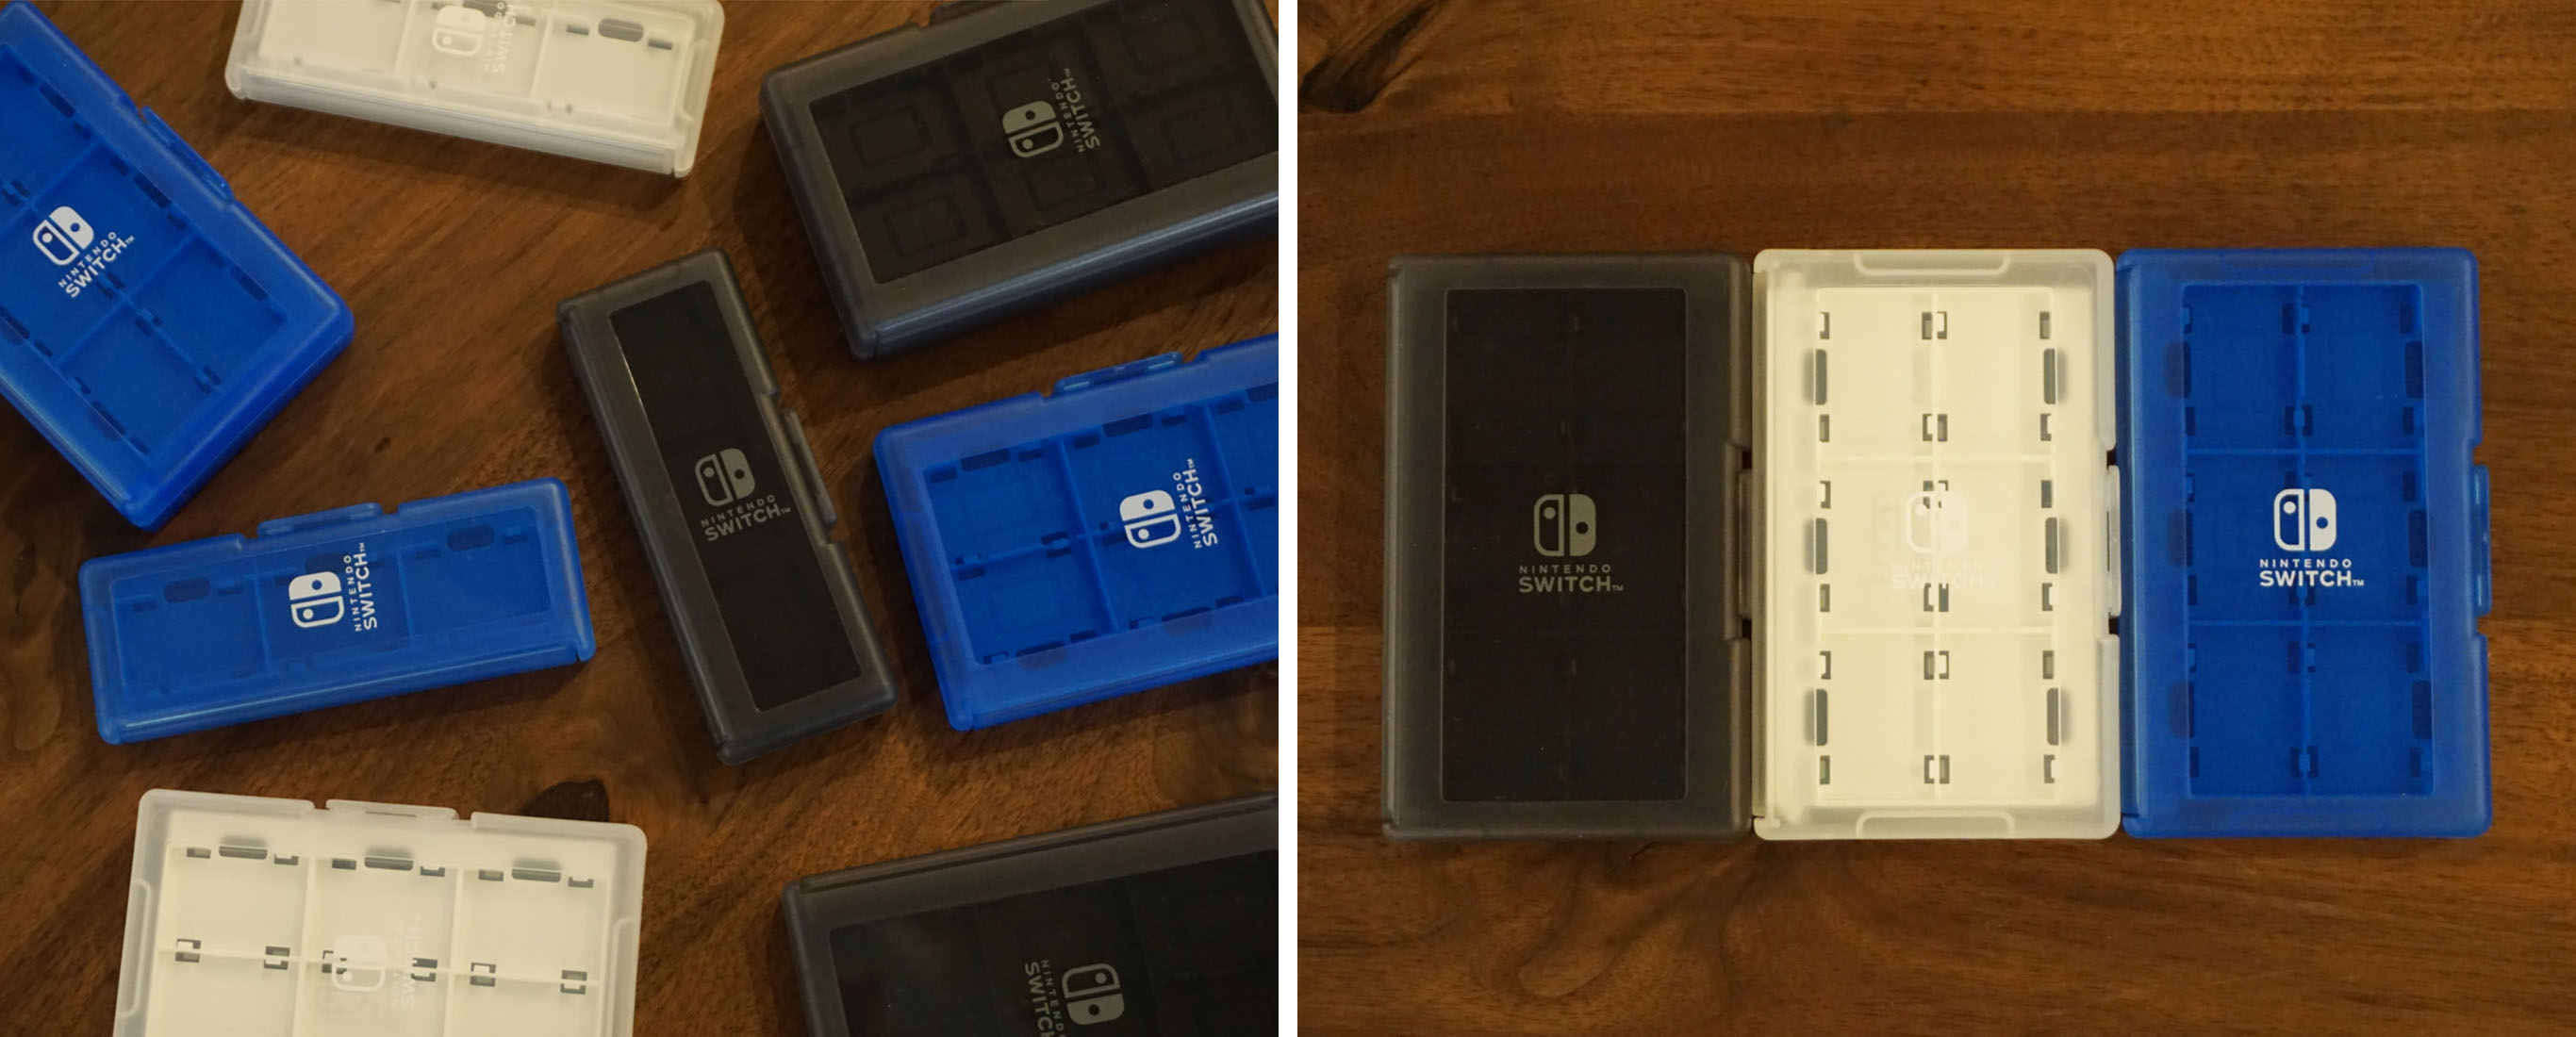 株式会社 HORI | カードケース12+2 for Nintendo Switch ブラック